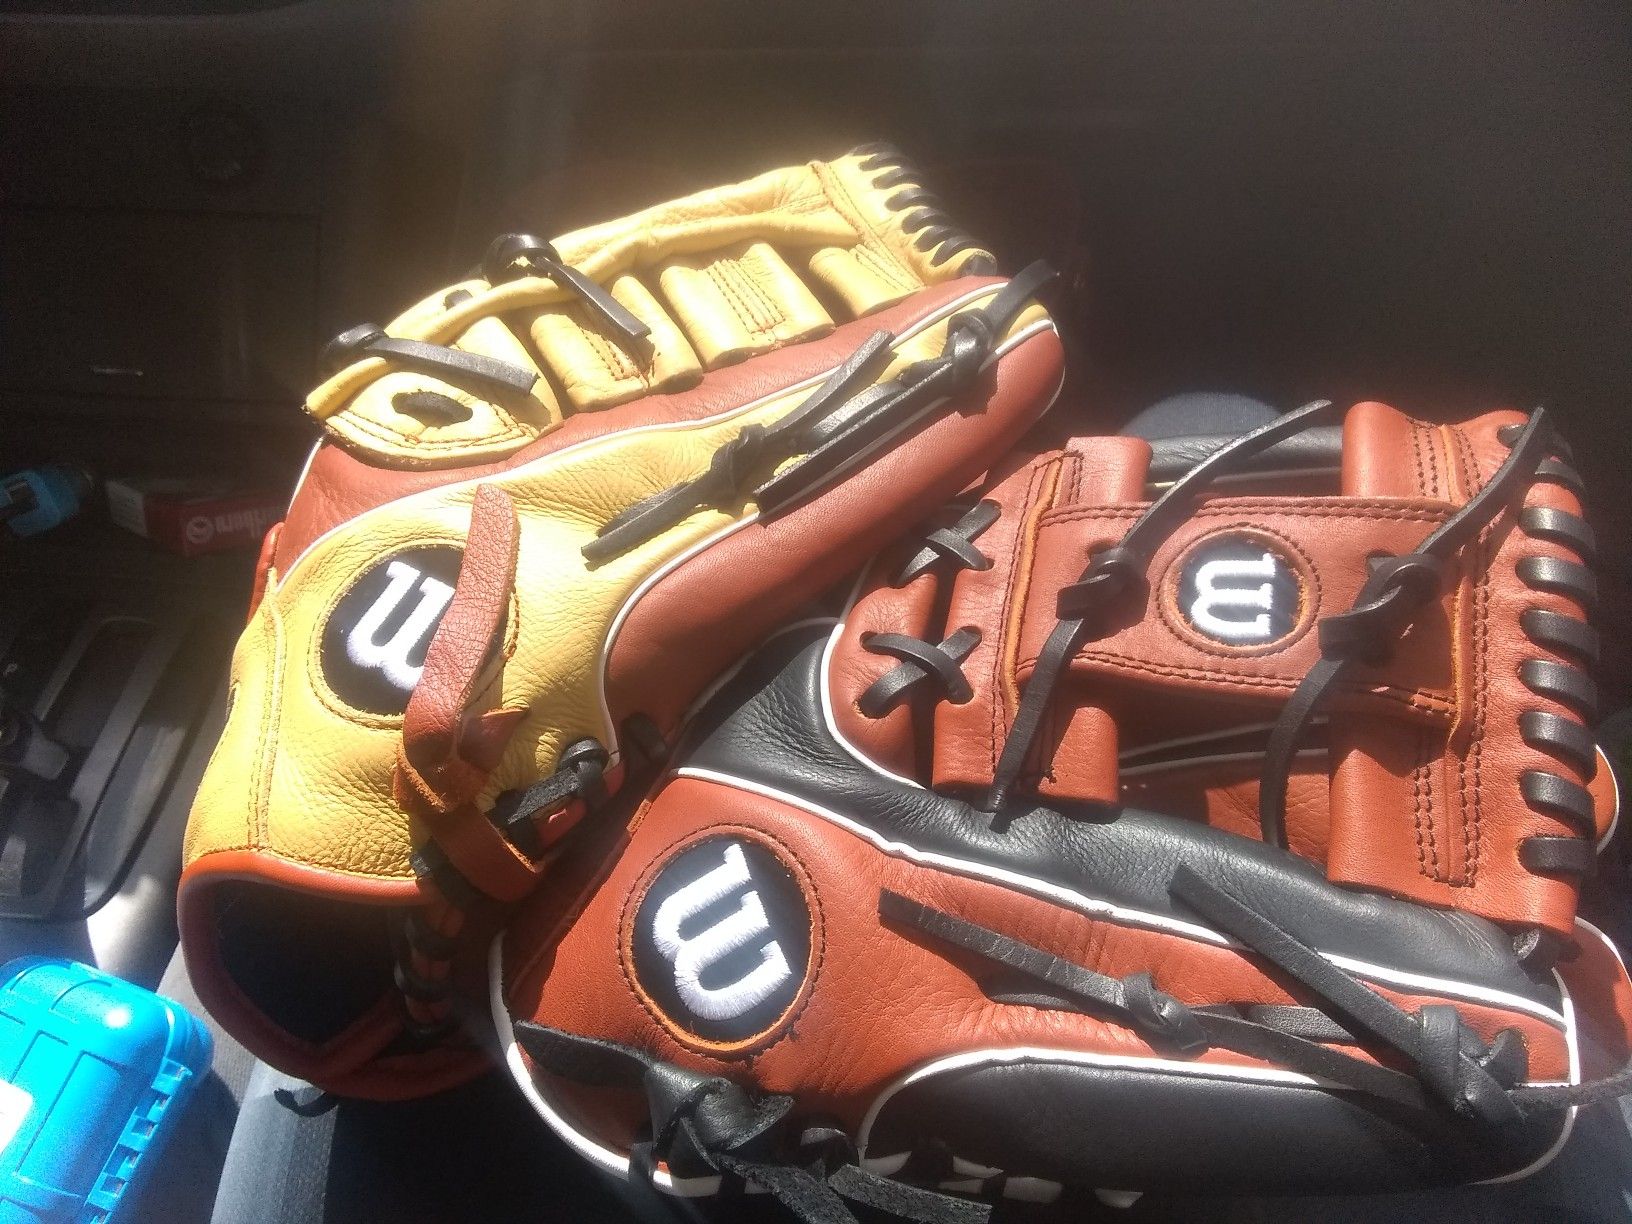 Wilson baseball gloves